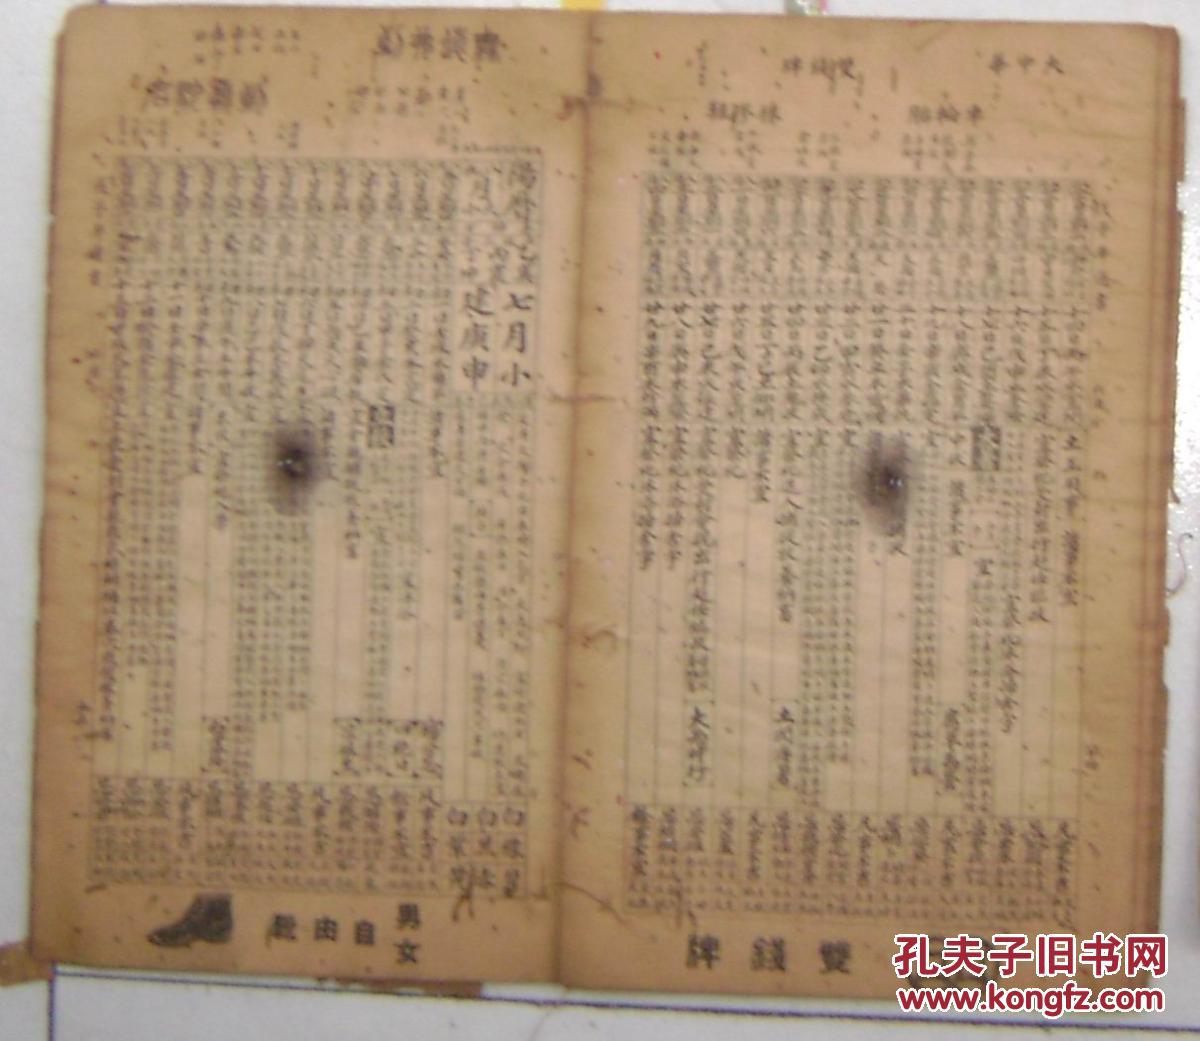 中华民国三十七年 农历通书   大中华橡胶厂创立二十周年纪念